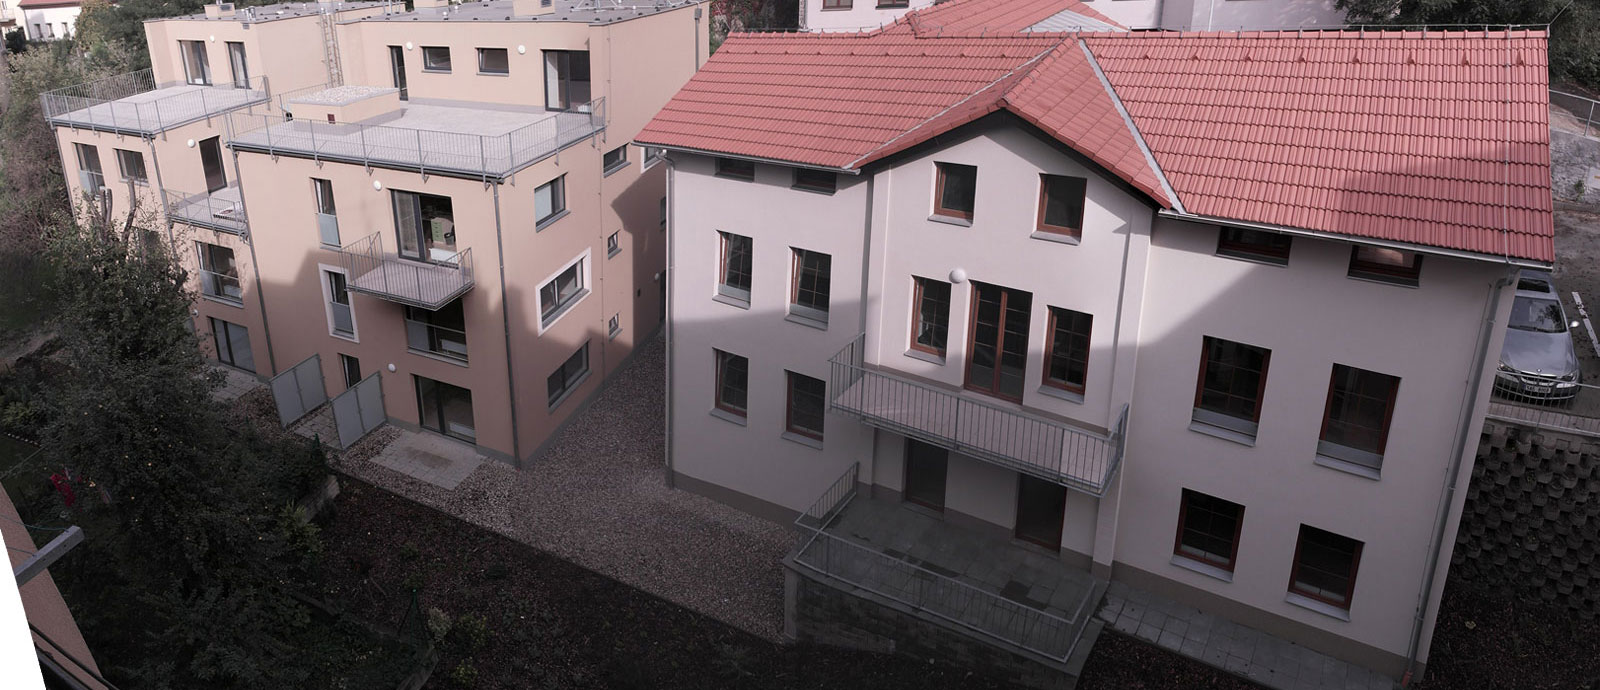 Pohled na oba bloky bytového domu